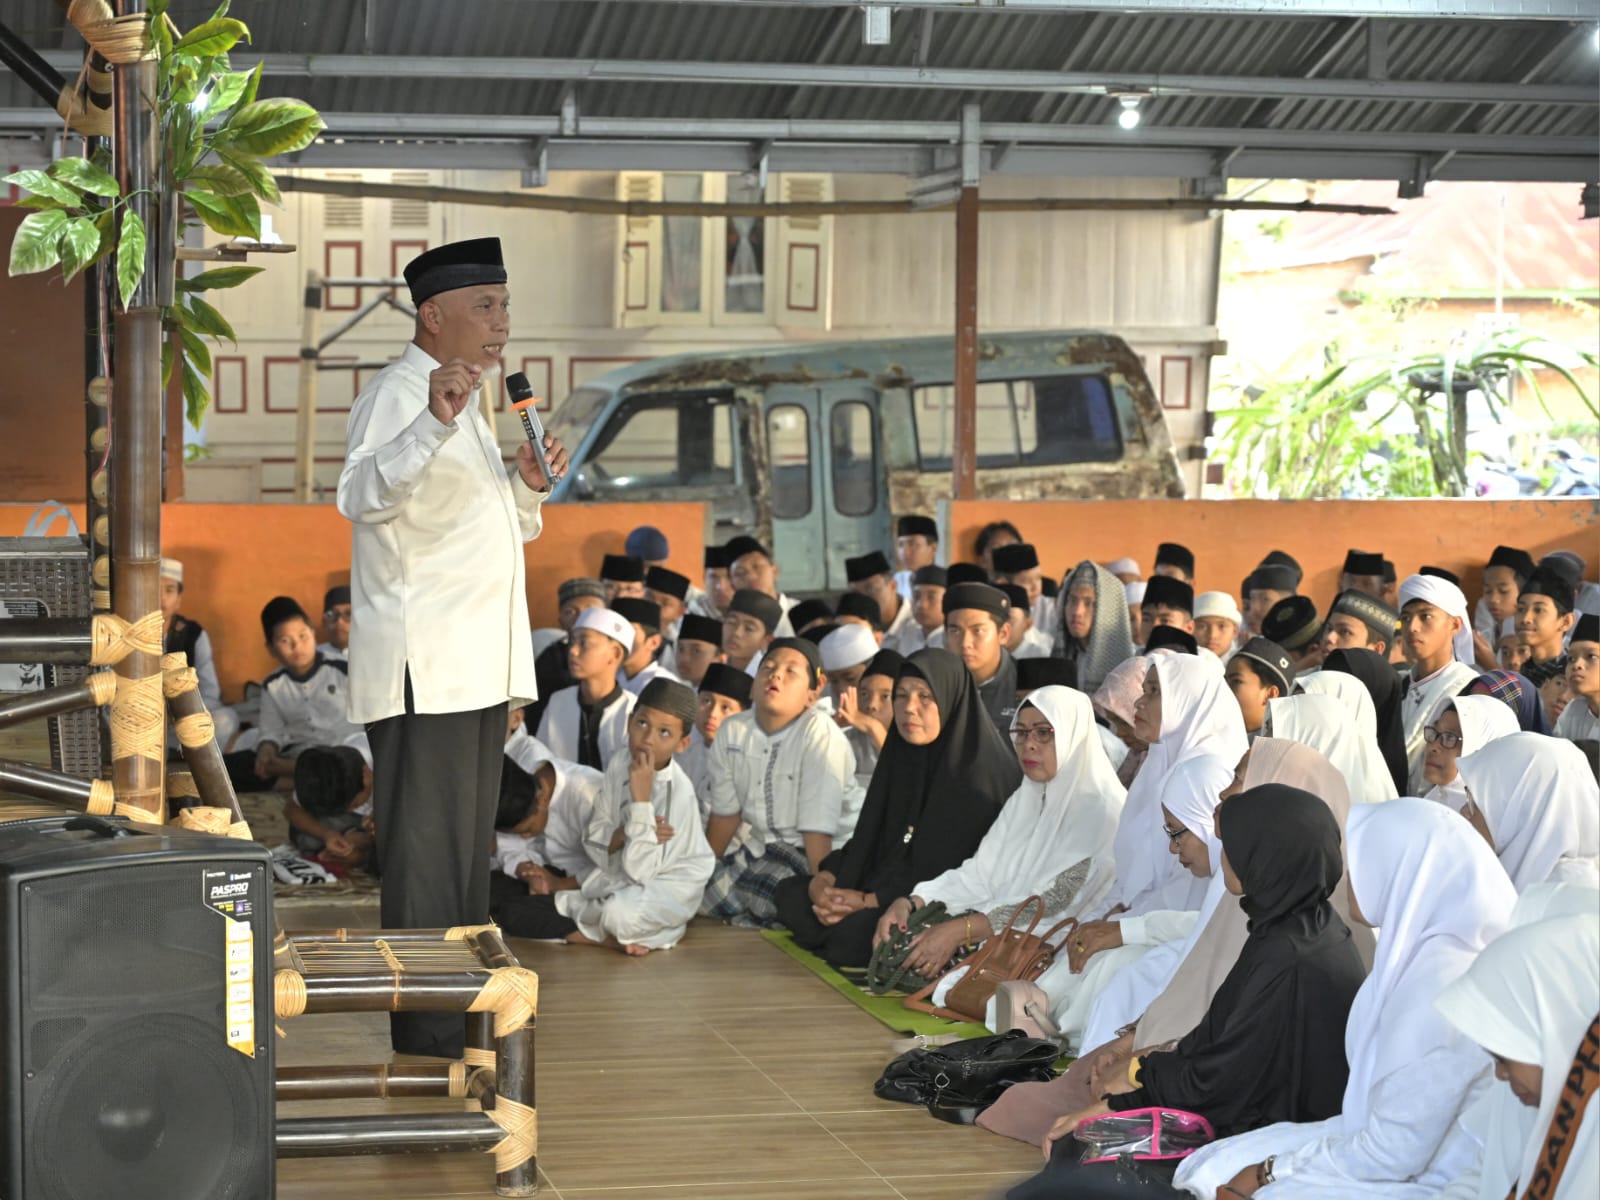 Gubernur Sumbar Mahyeldi, berbagi pengalaman dan memberi semangat santri di Ponpes Tahfiz Quran Muallimin Muhammadiyah, Agam. Foto Adpsb. 